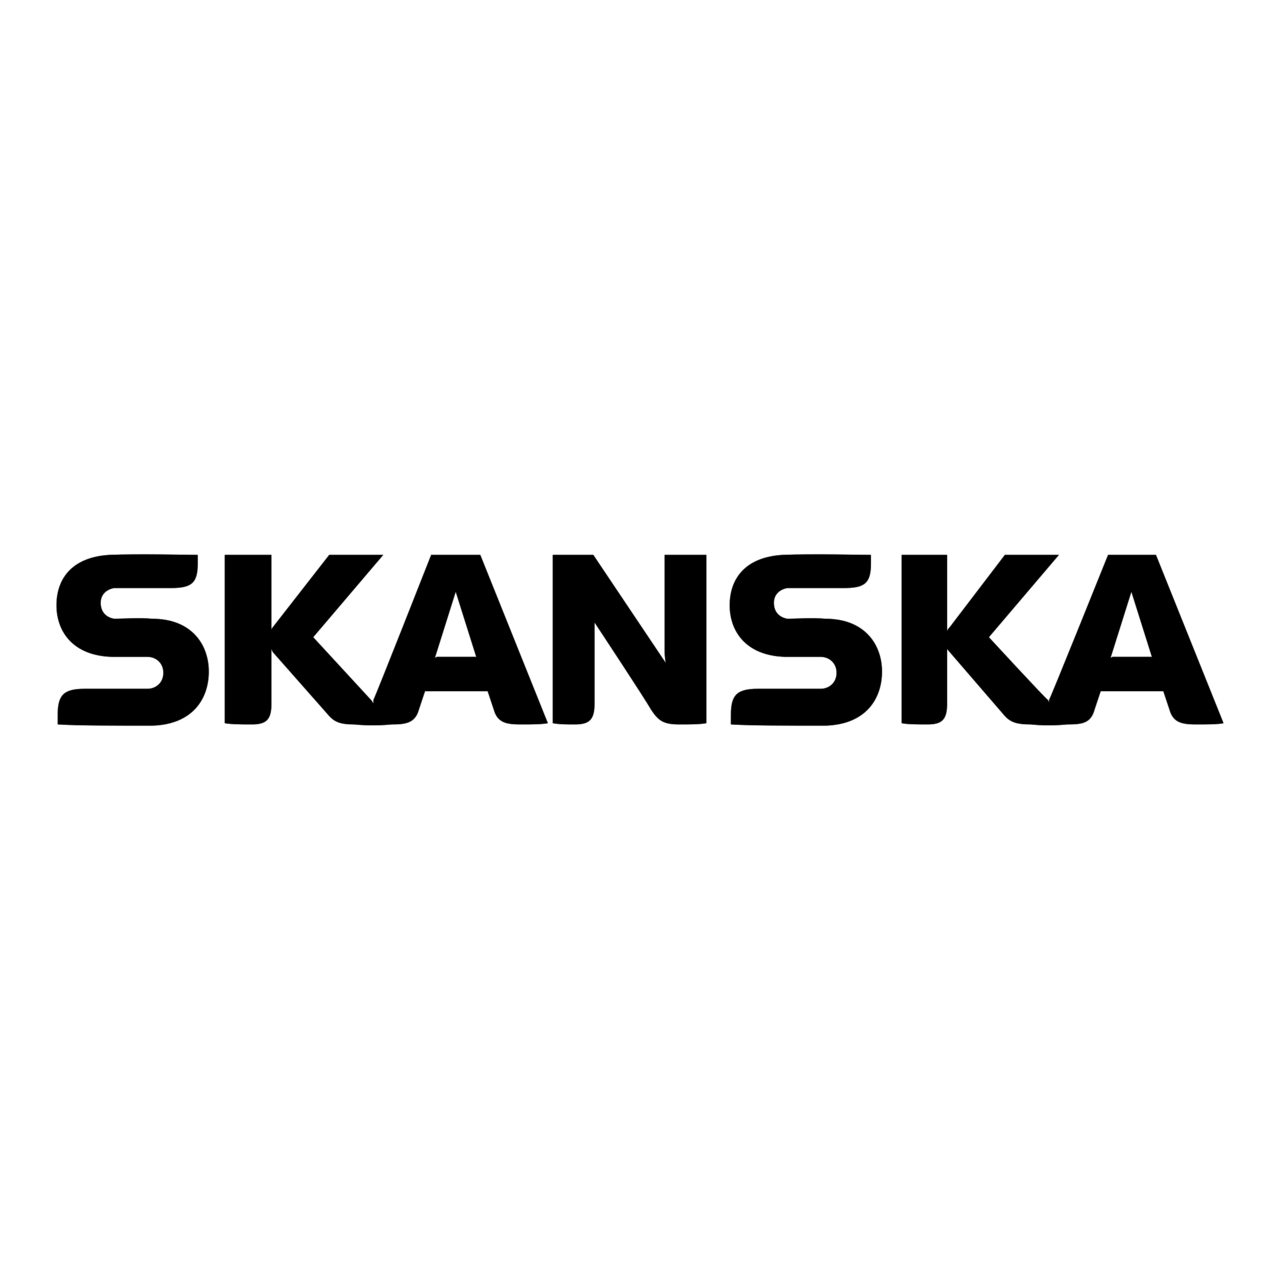 skanska logo